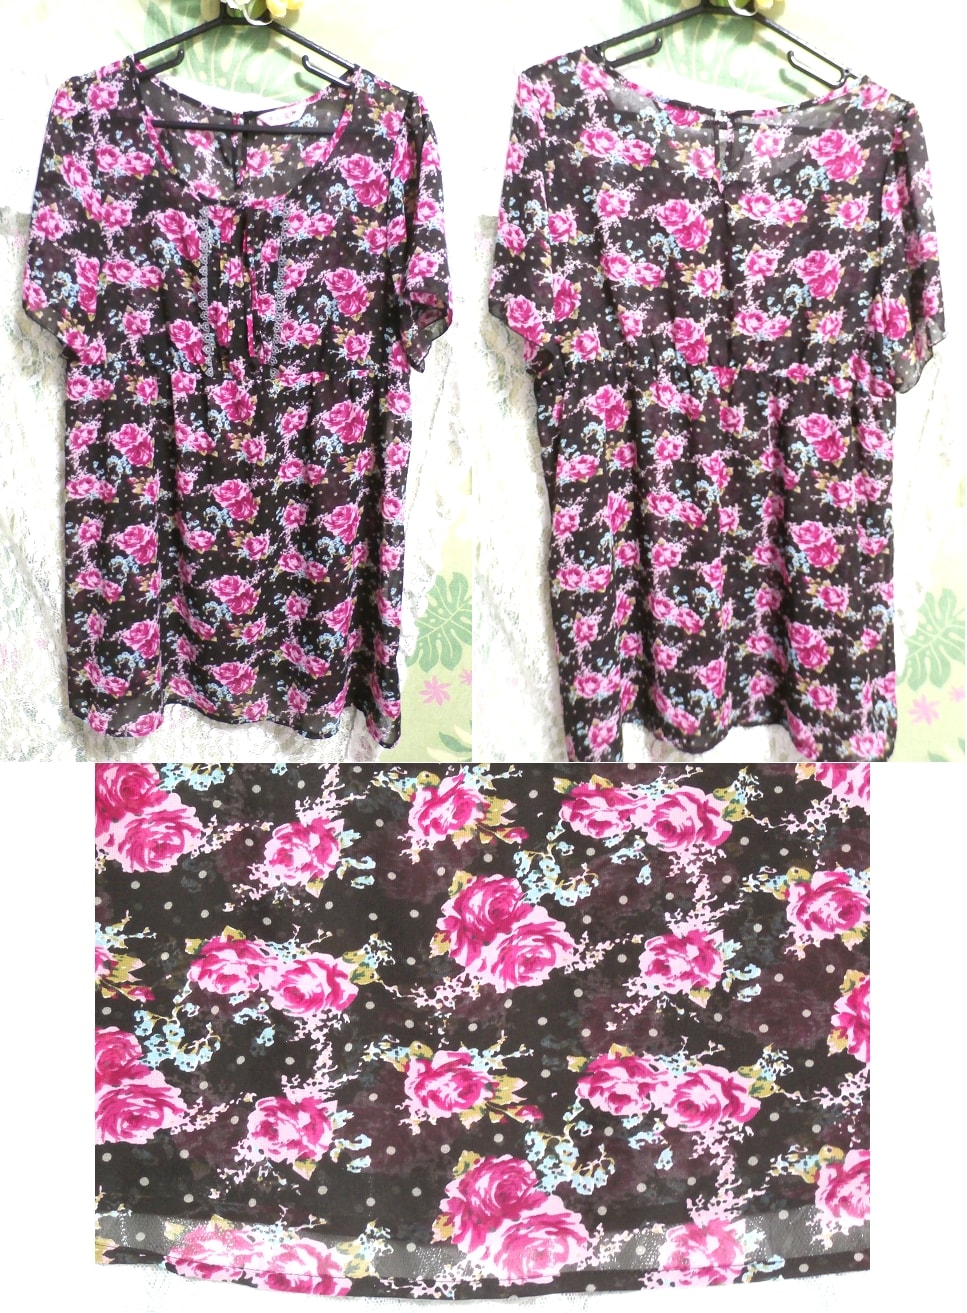 Vestido tipo túnica camisón tipo negligee con estampado floral rosa y negro, sayo, manga corta, talla xl y superior